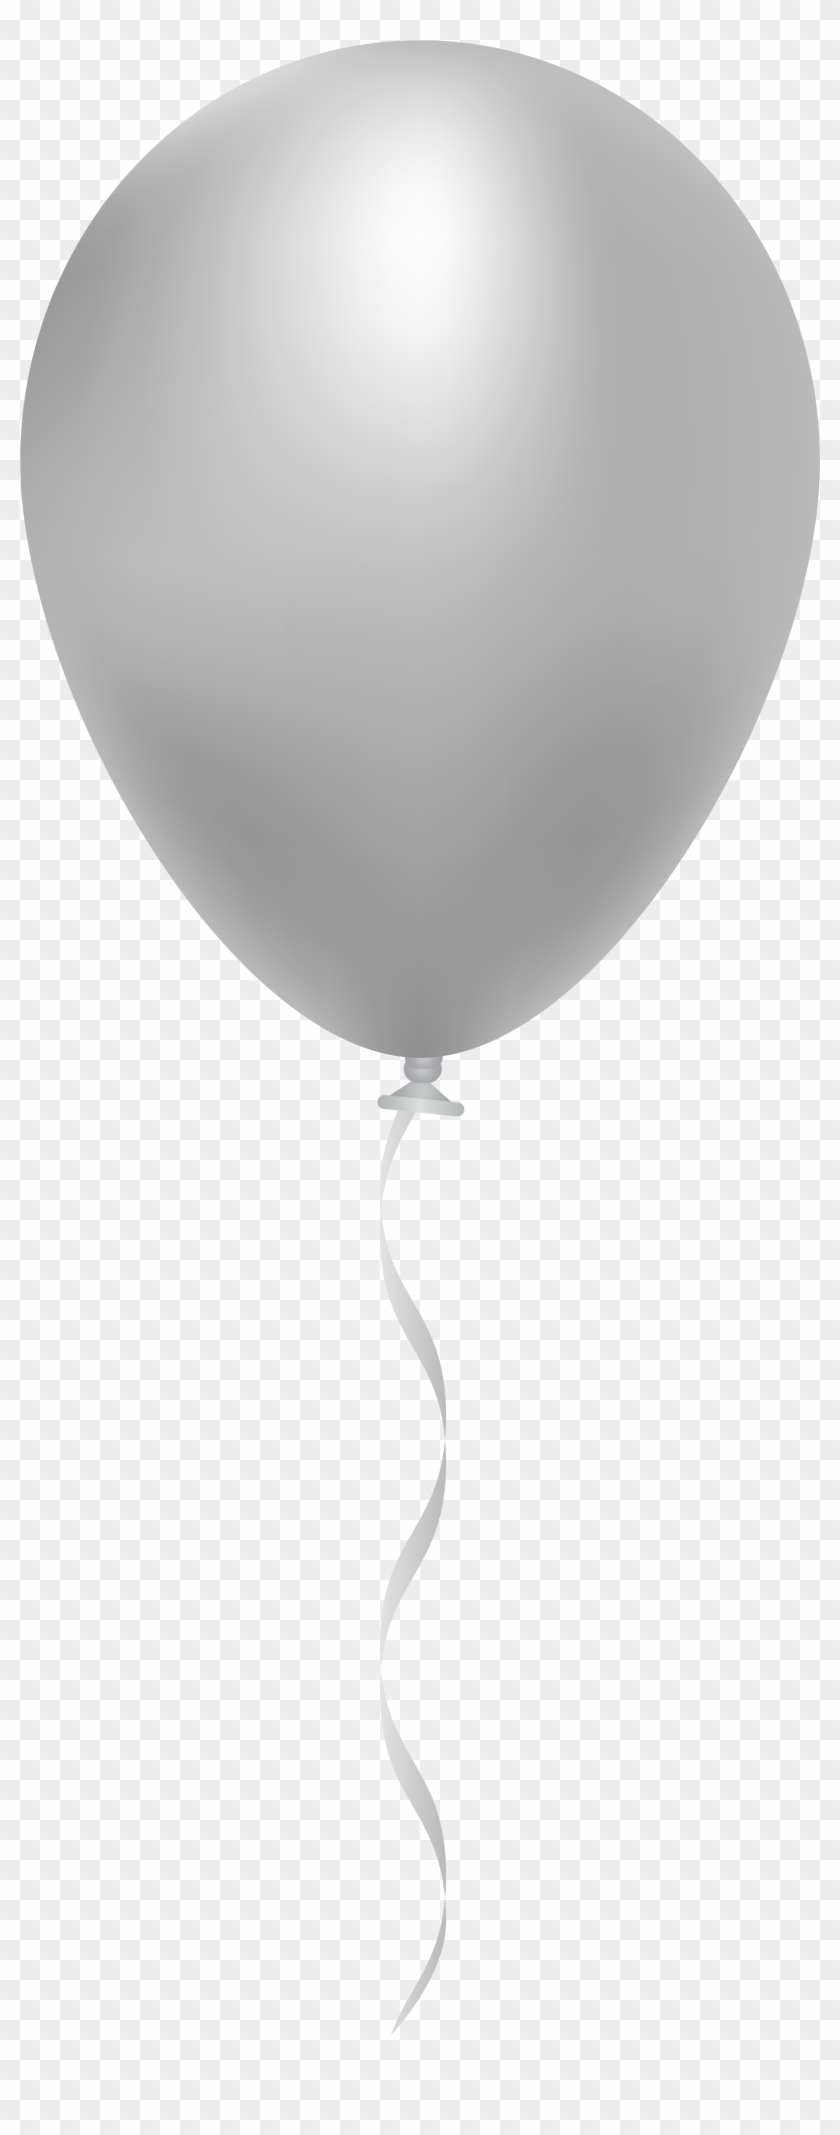 Balloon Clipart #598973